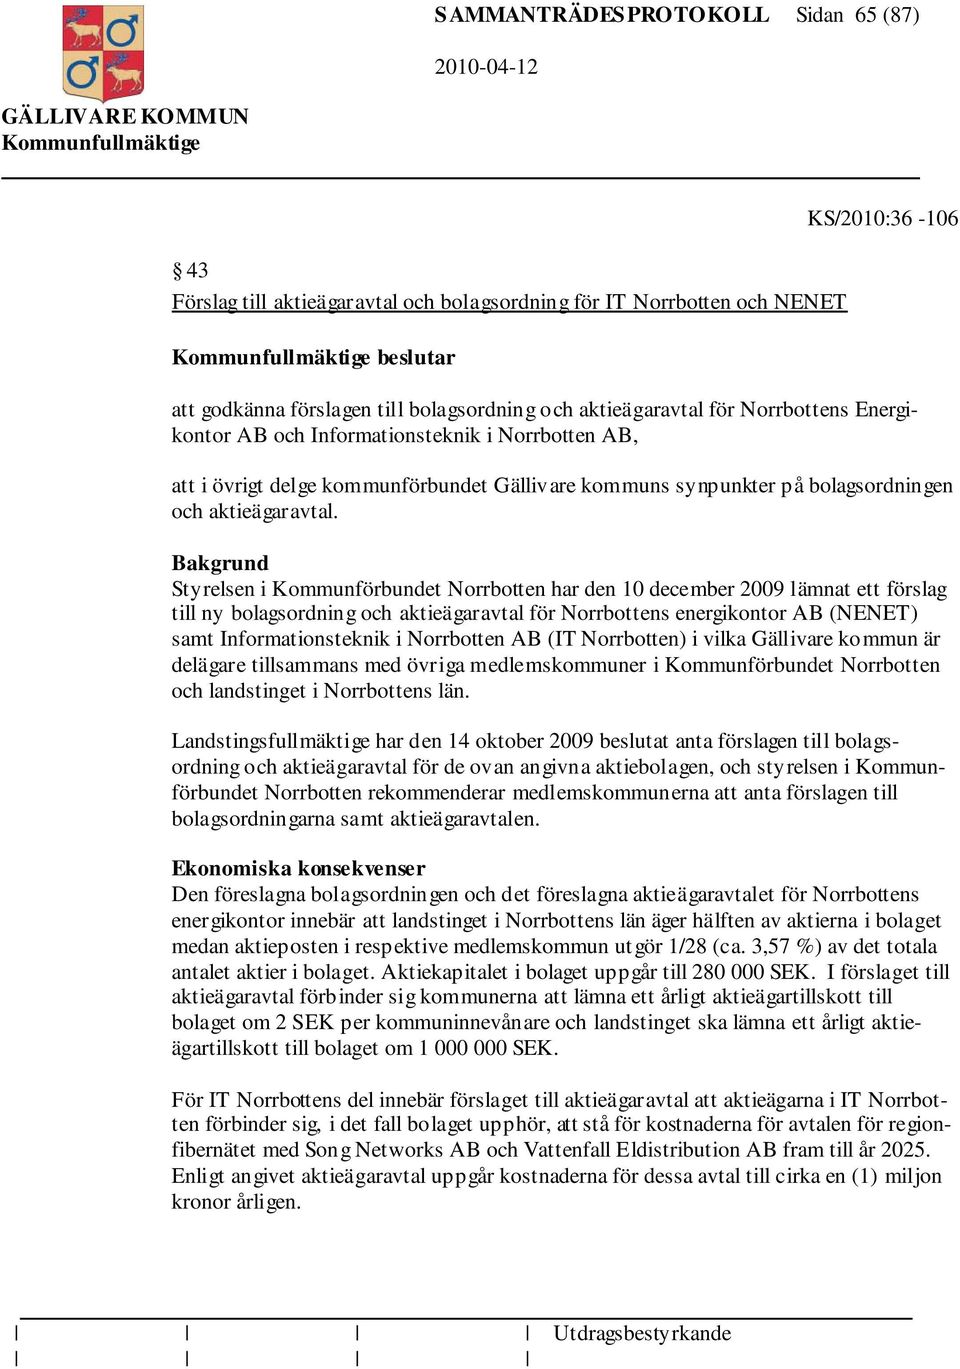 Styrelsen i Kommunförbundet Norrbotten har den 10 december 2009 lämnat ett förslag till ny bolagsordning och aktieägaravtal för Norrbottens energikontor AB (NENET) samt Informationsteknik i